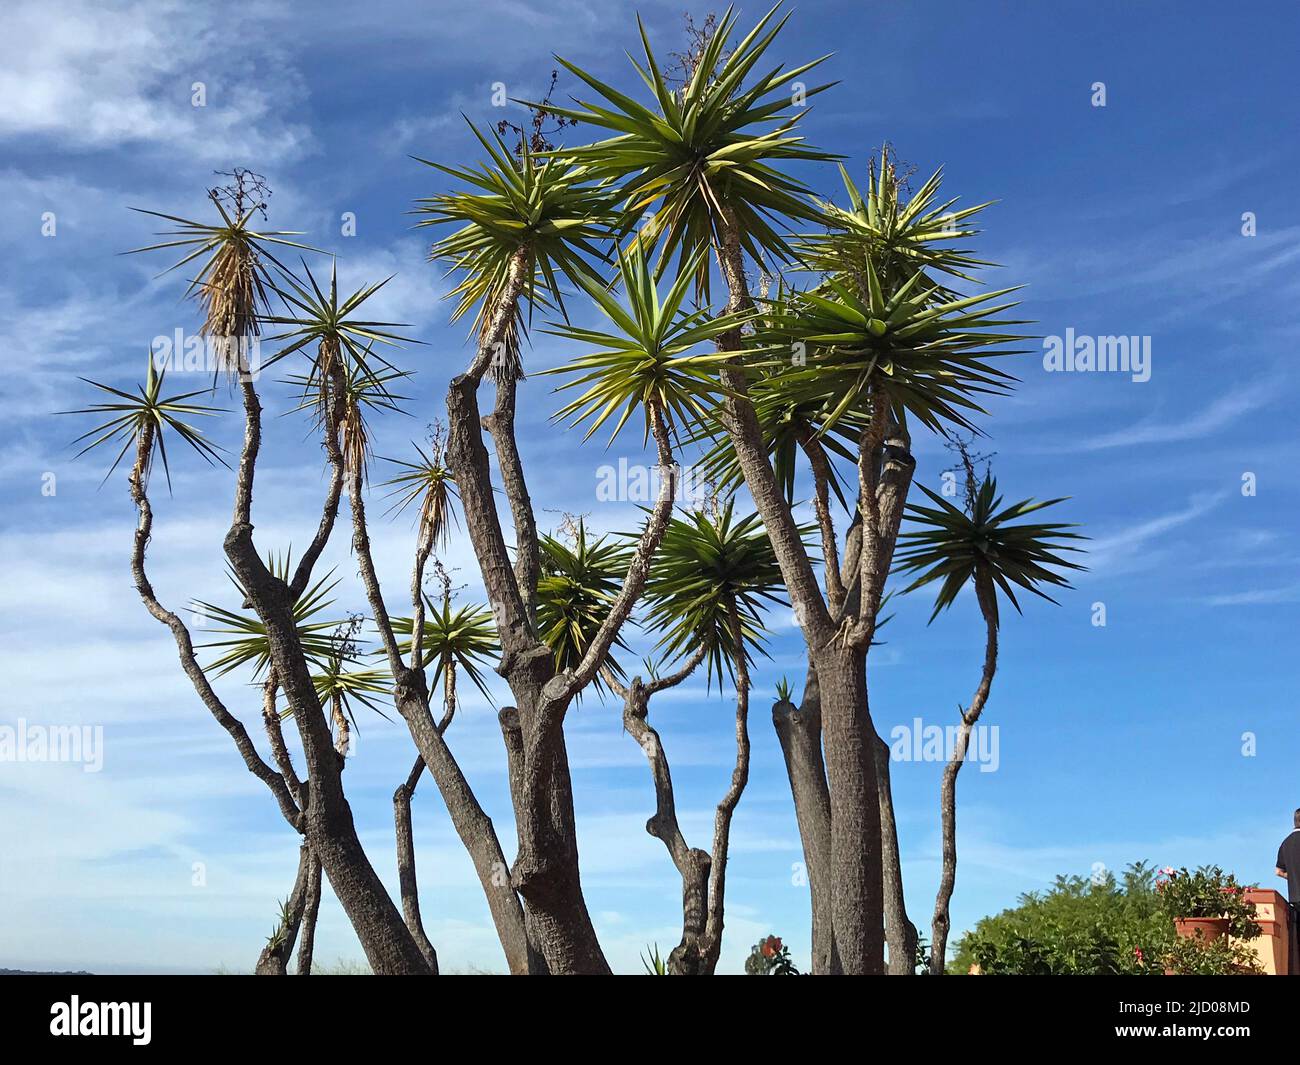 Cactus, California, Stock Photo